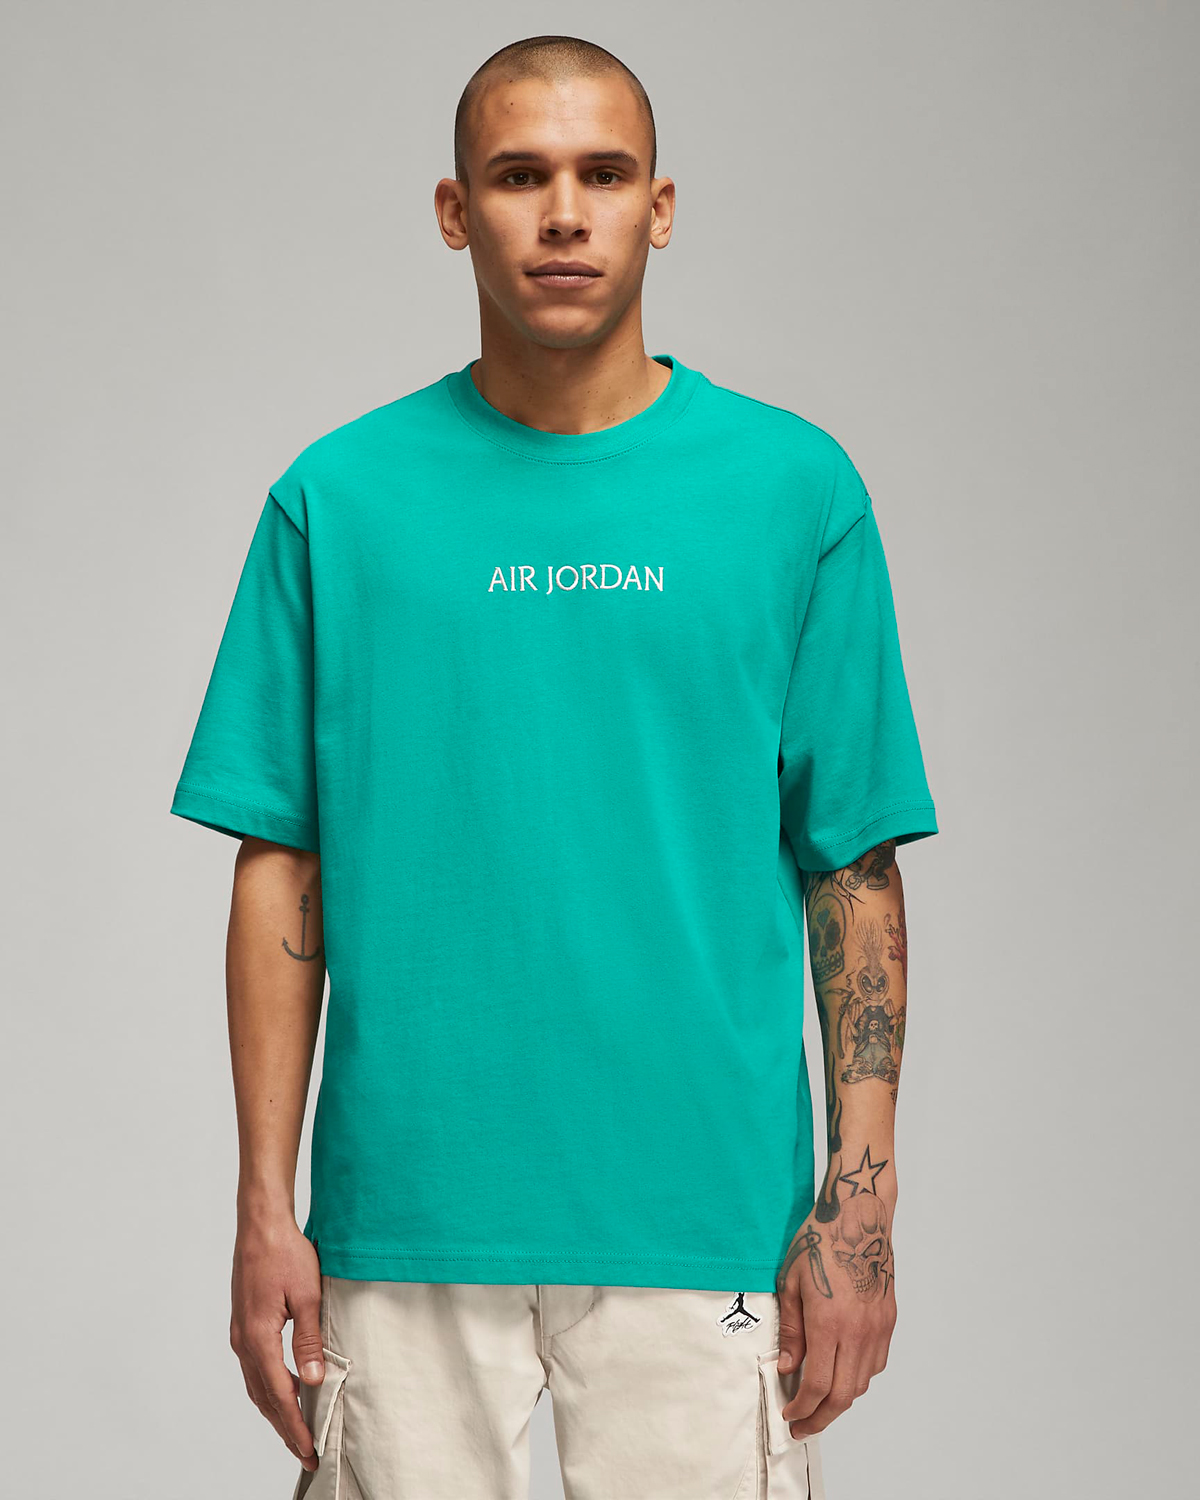 air-jordan-new-emerald-t-shirt-1